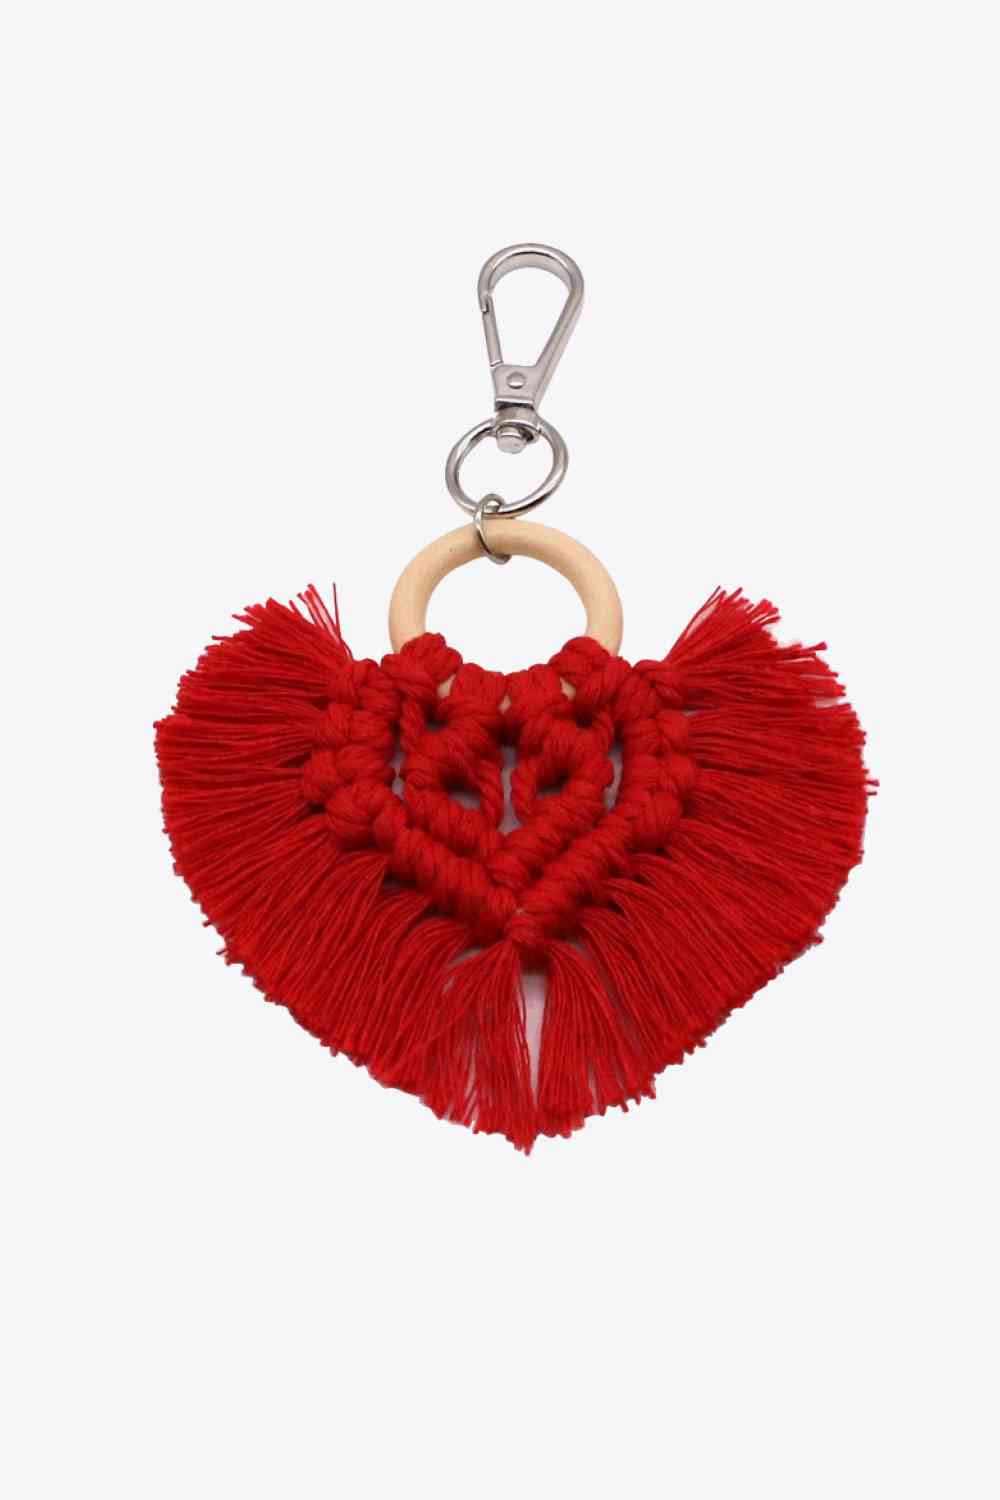 Assortiment de 4 porte-clés à franges en macramé en forme de cœur